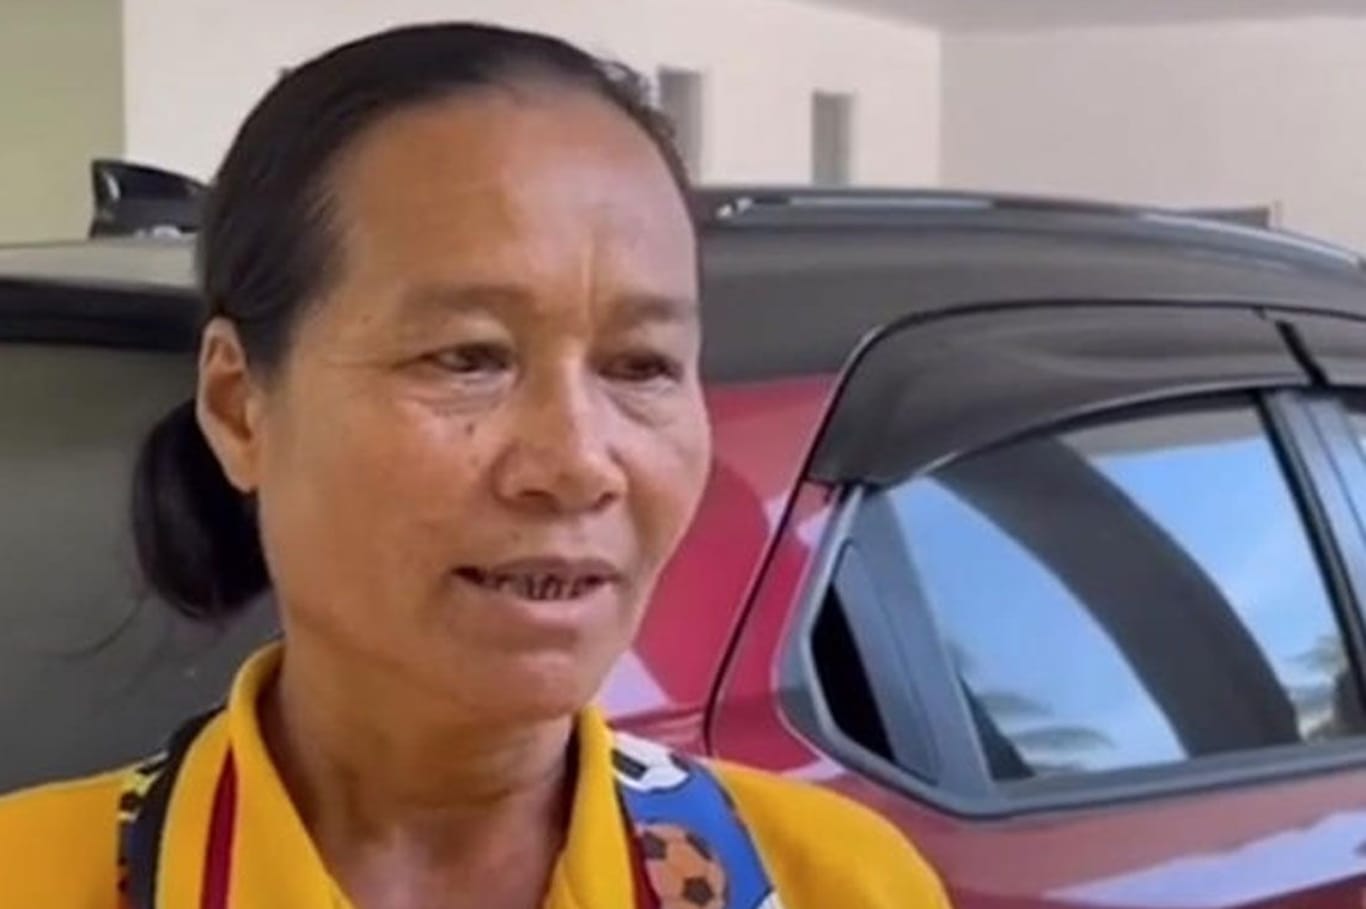 Nutwalai Phupongta kümmerte sich 17 Jahre lang um eine Französin. Die vermachte ihr ihr Erbe.